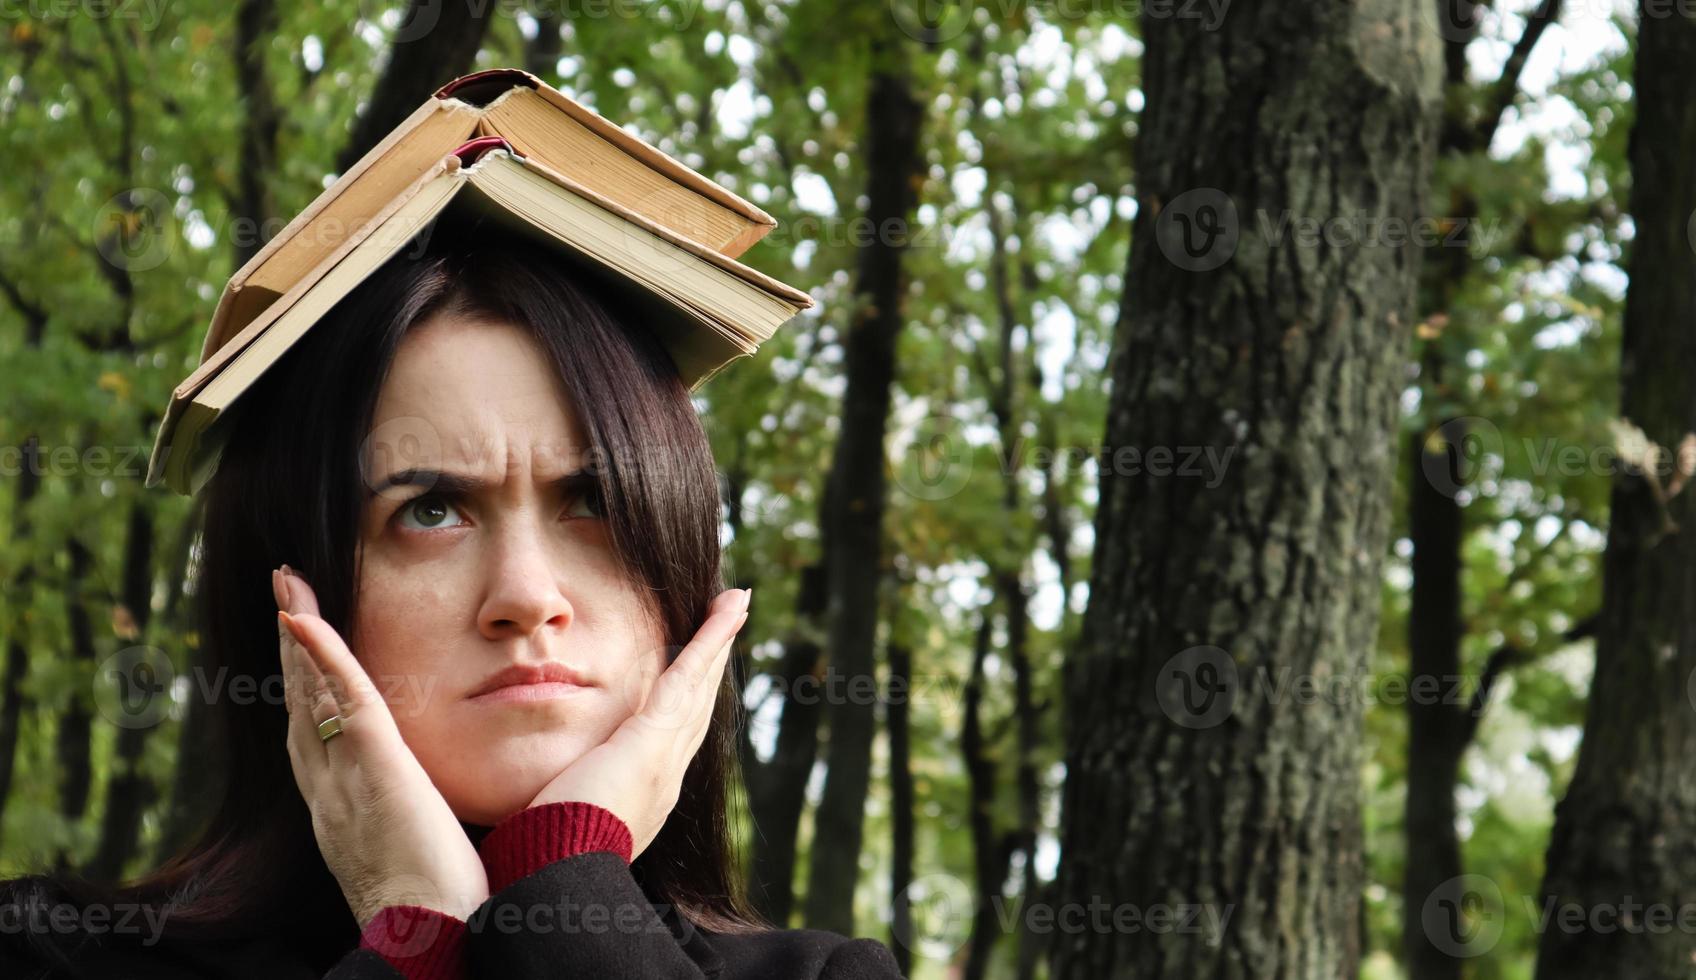 ritratto di una giovane e divertente bruna nel parco con in mano un libro aperto sulla testa. l'apprendimento è divertente. donna in equilibrio con i libri sulla testa. lo studente è stanco di leggere. foto